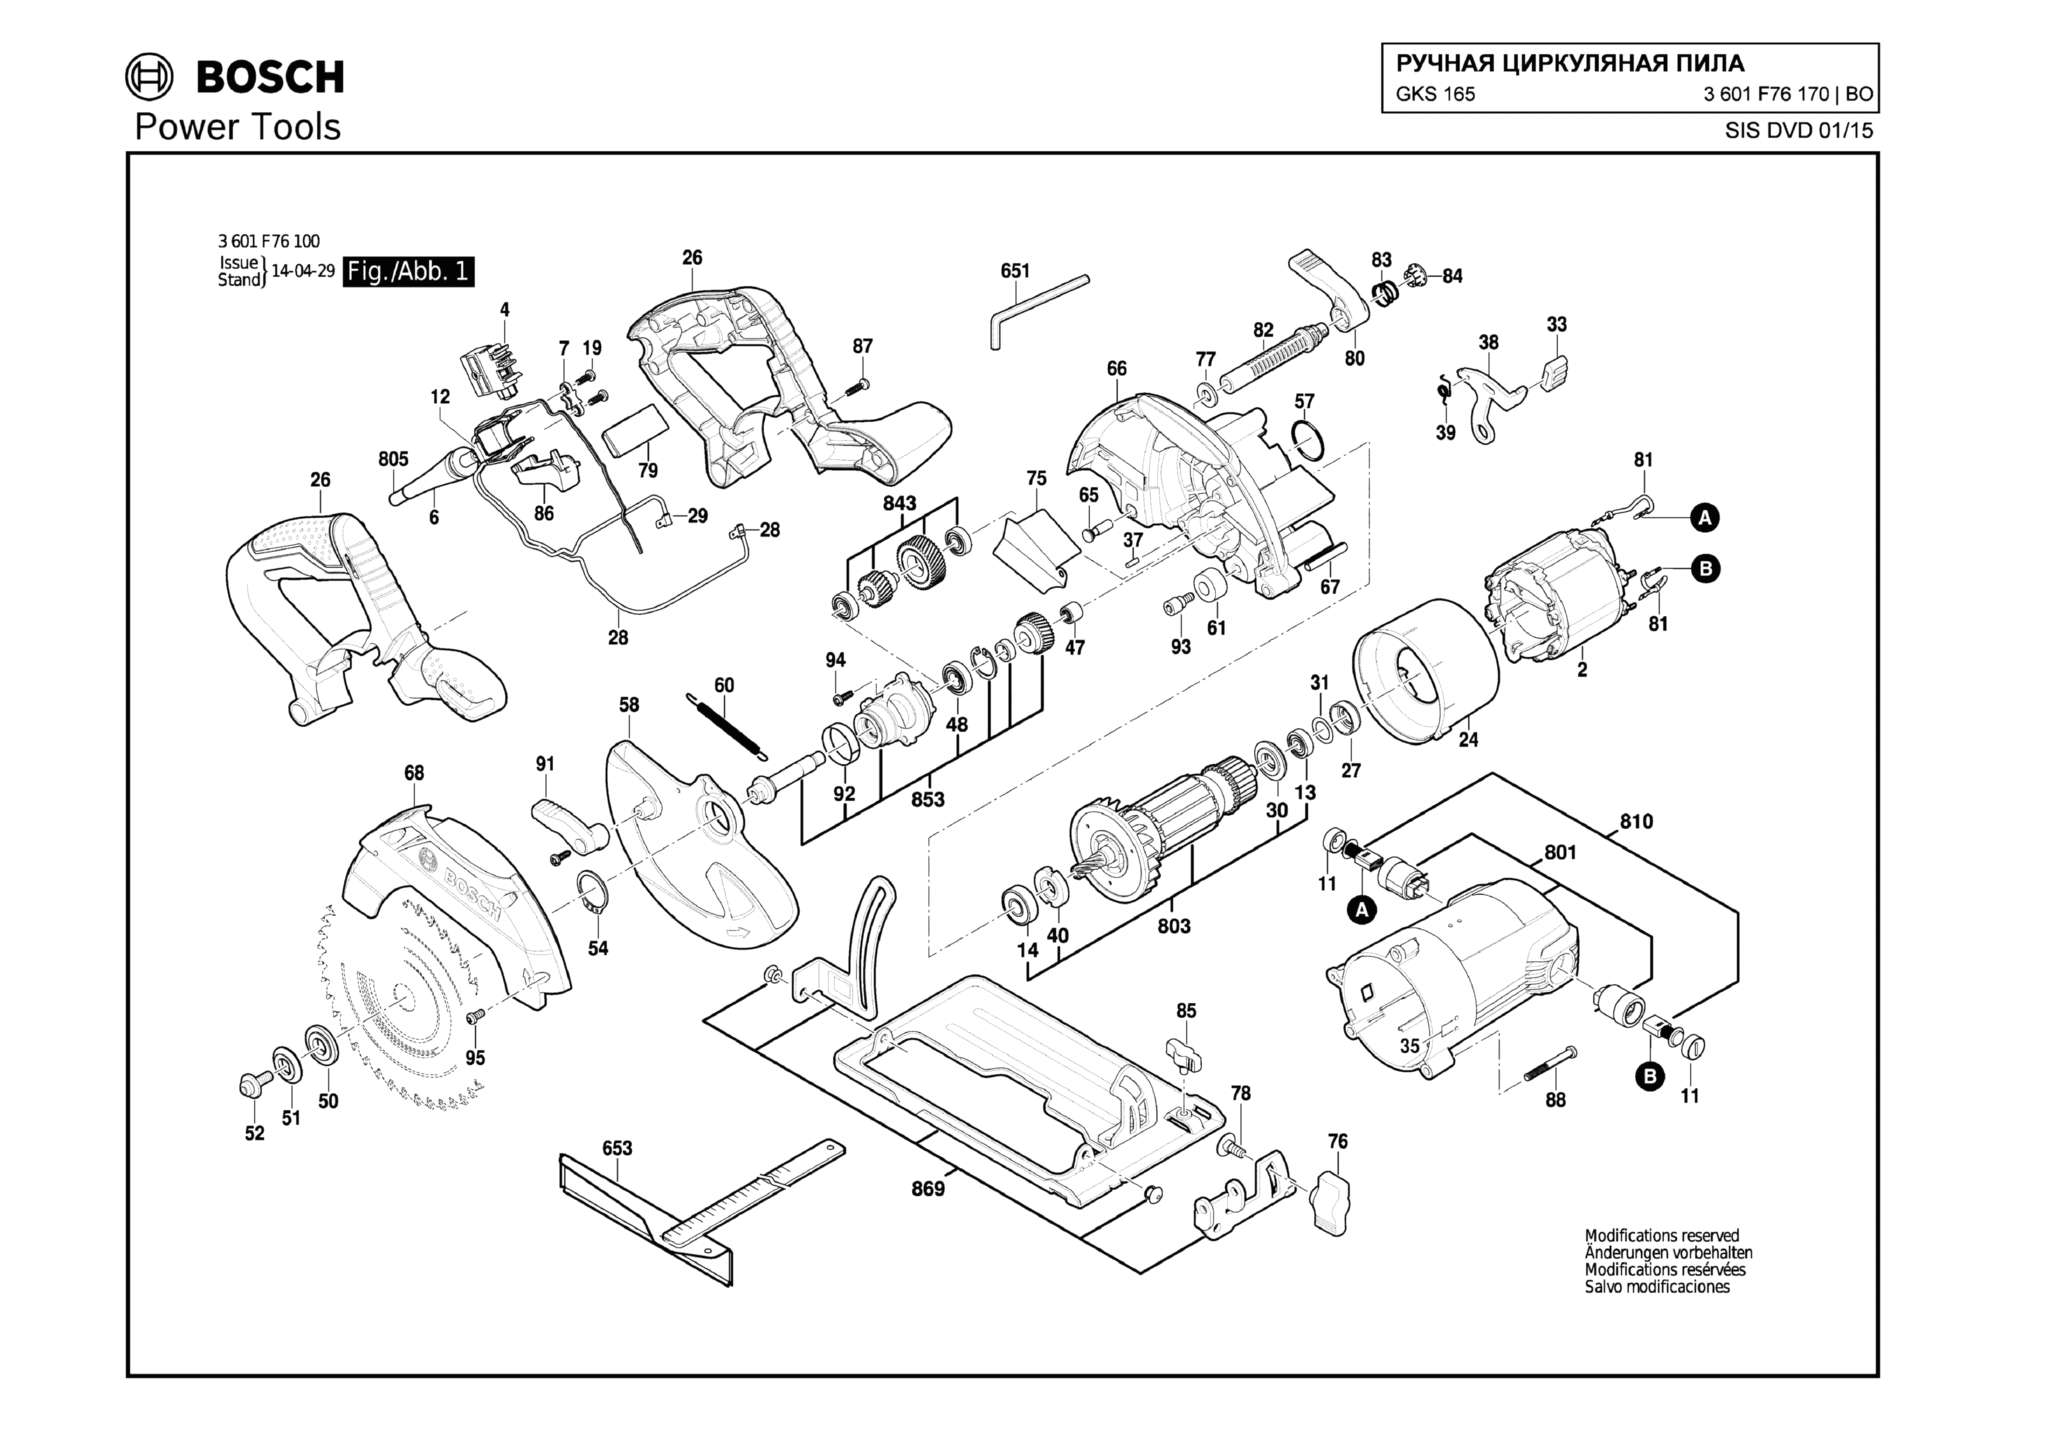 Запчасти, схема и деталировка Bosch GKS 165 (ТИП 3601F76170)